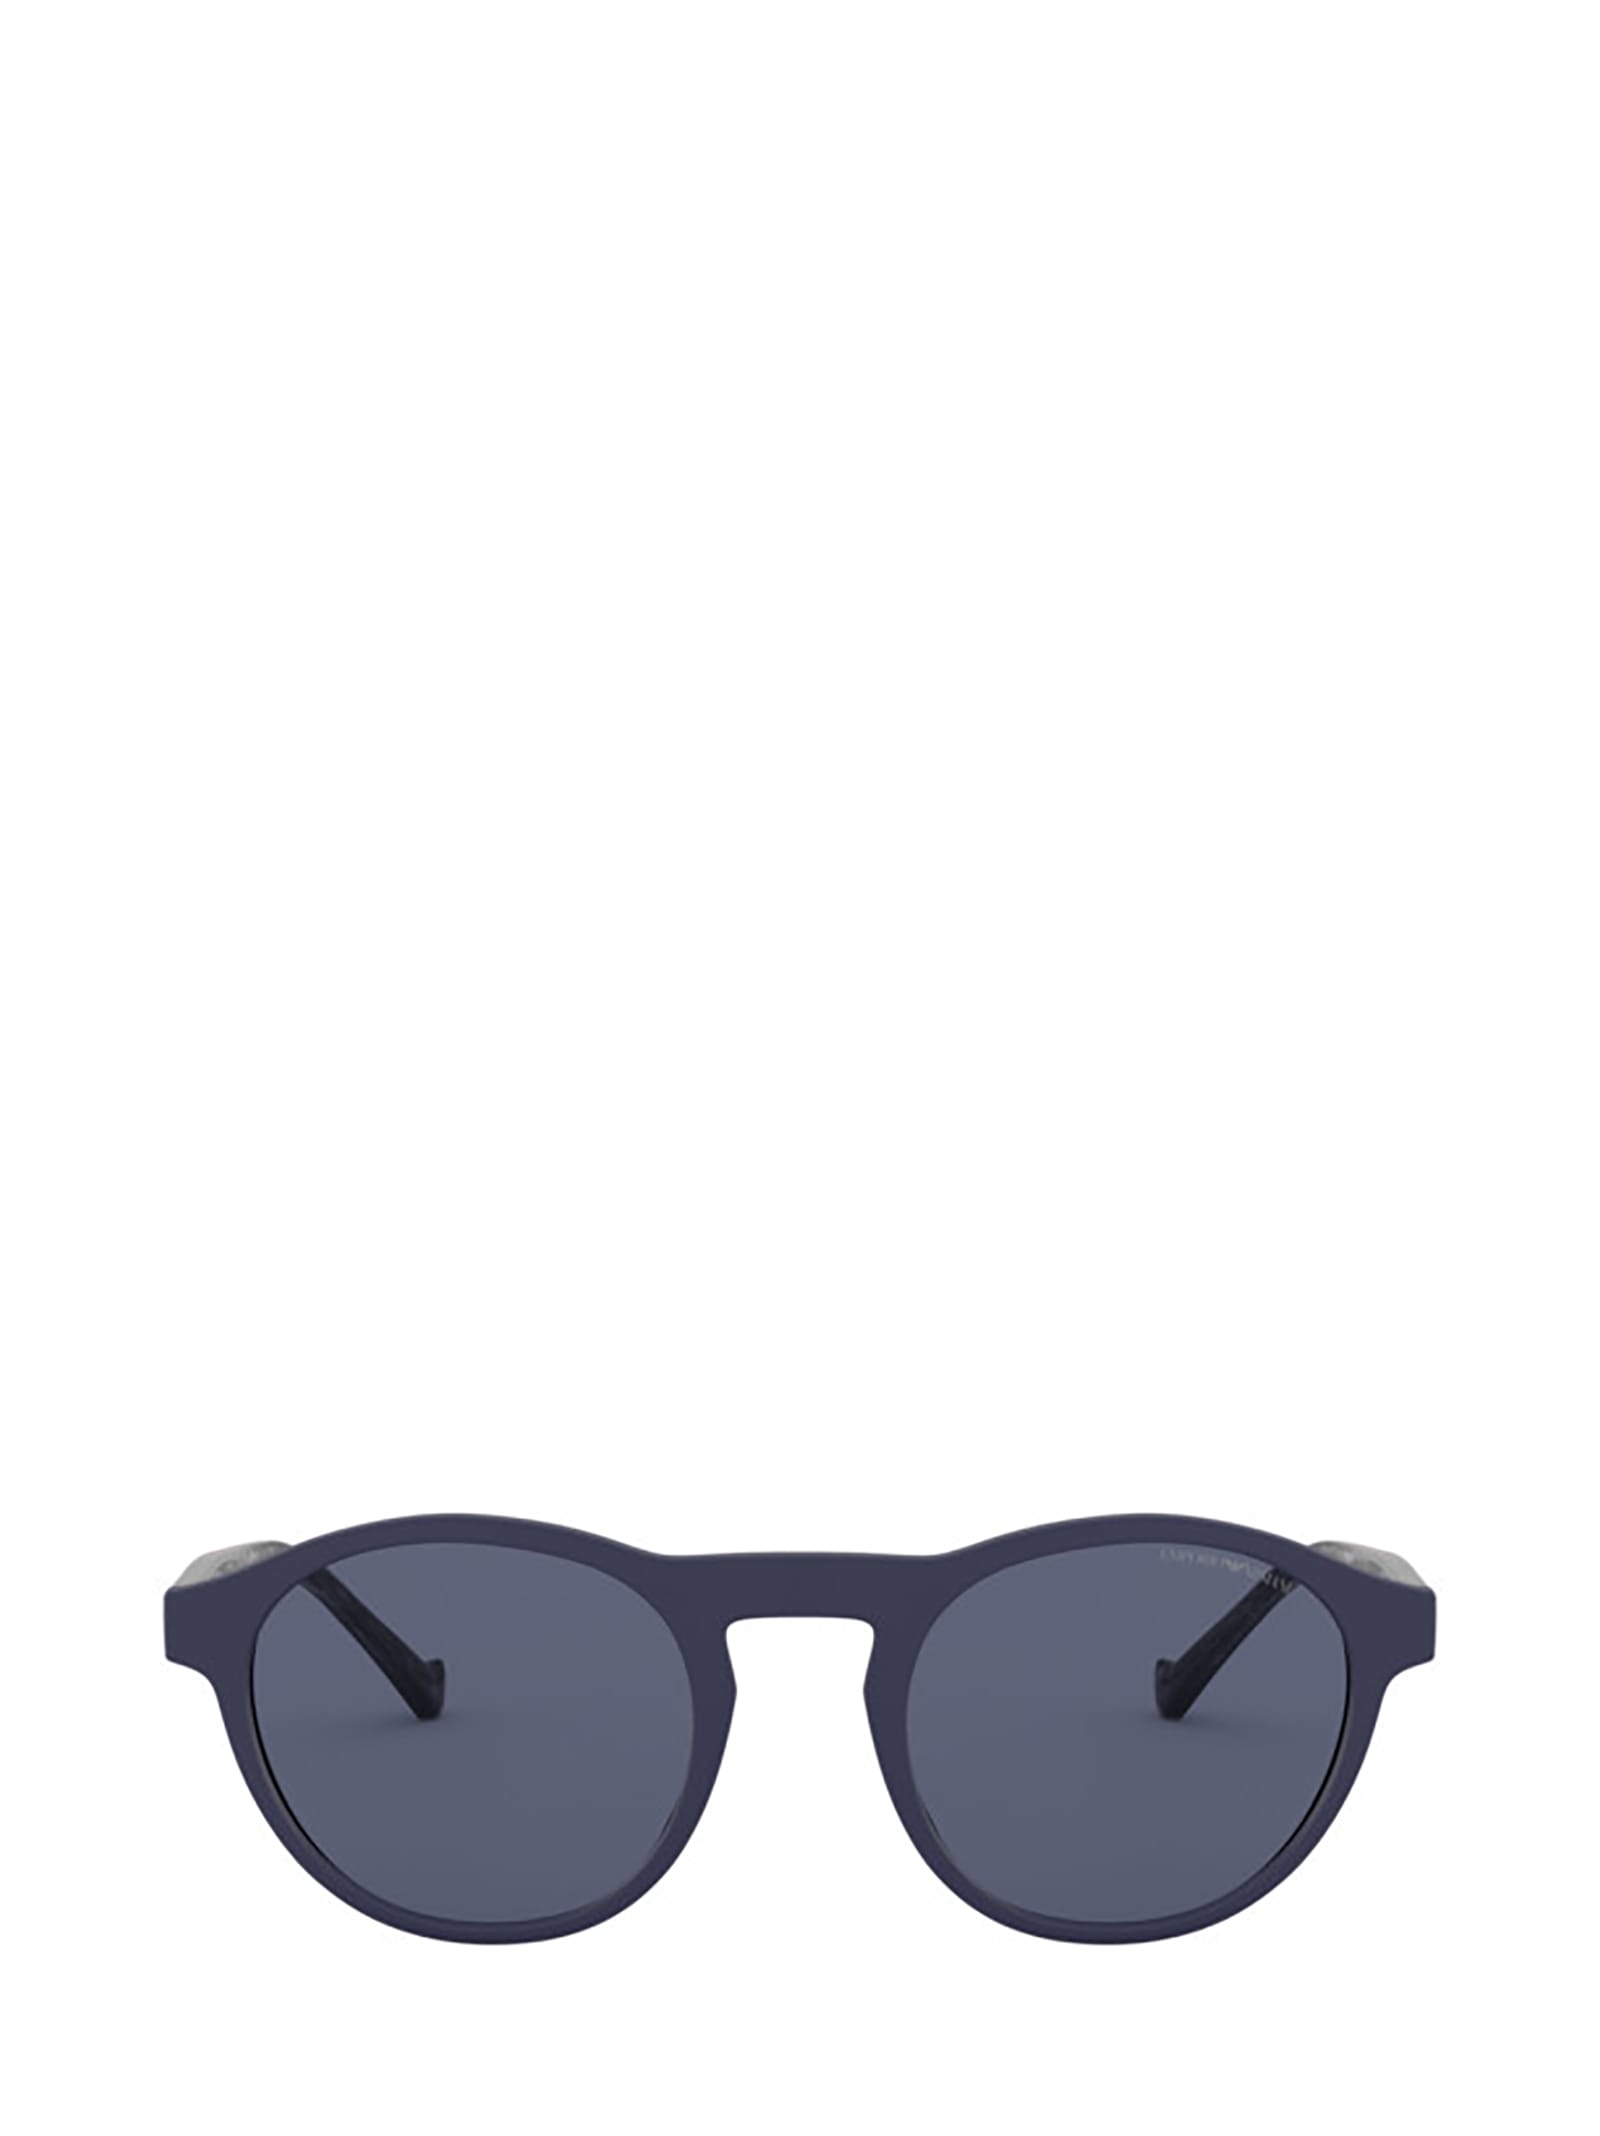 Emporio Armani Emporio Armani Ea4138 Matte Blue Sunglasses